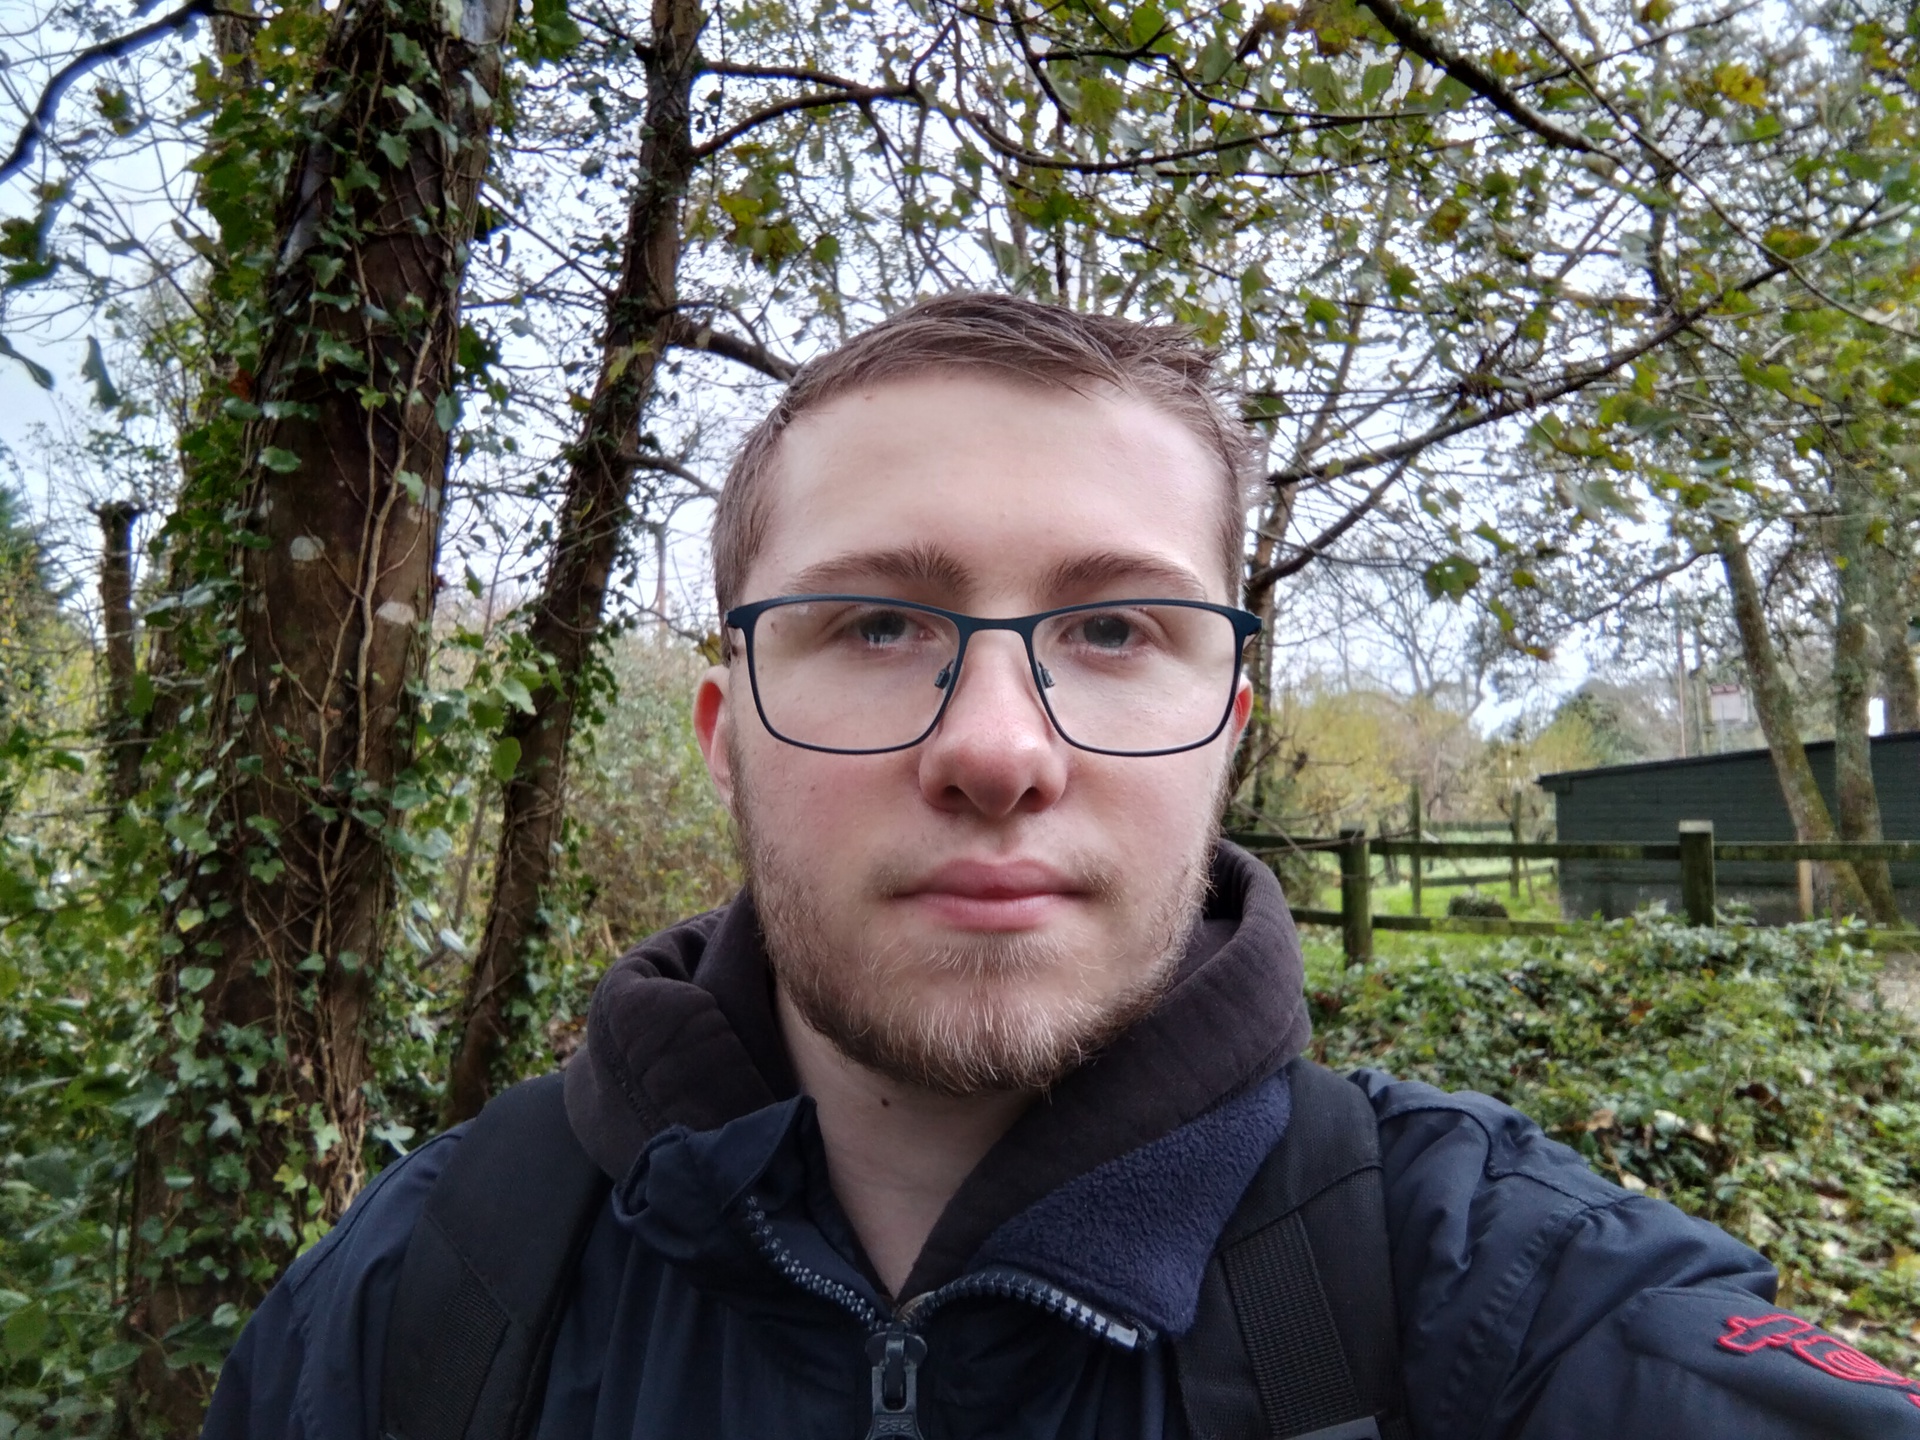 OnePlus Nord N100 selfie photo sample in a woods